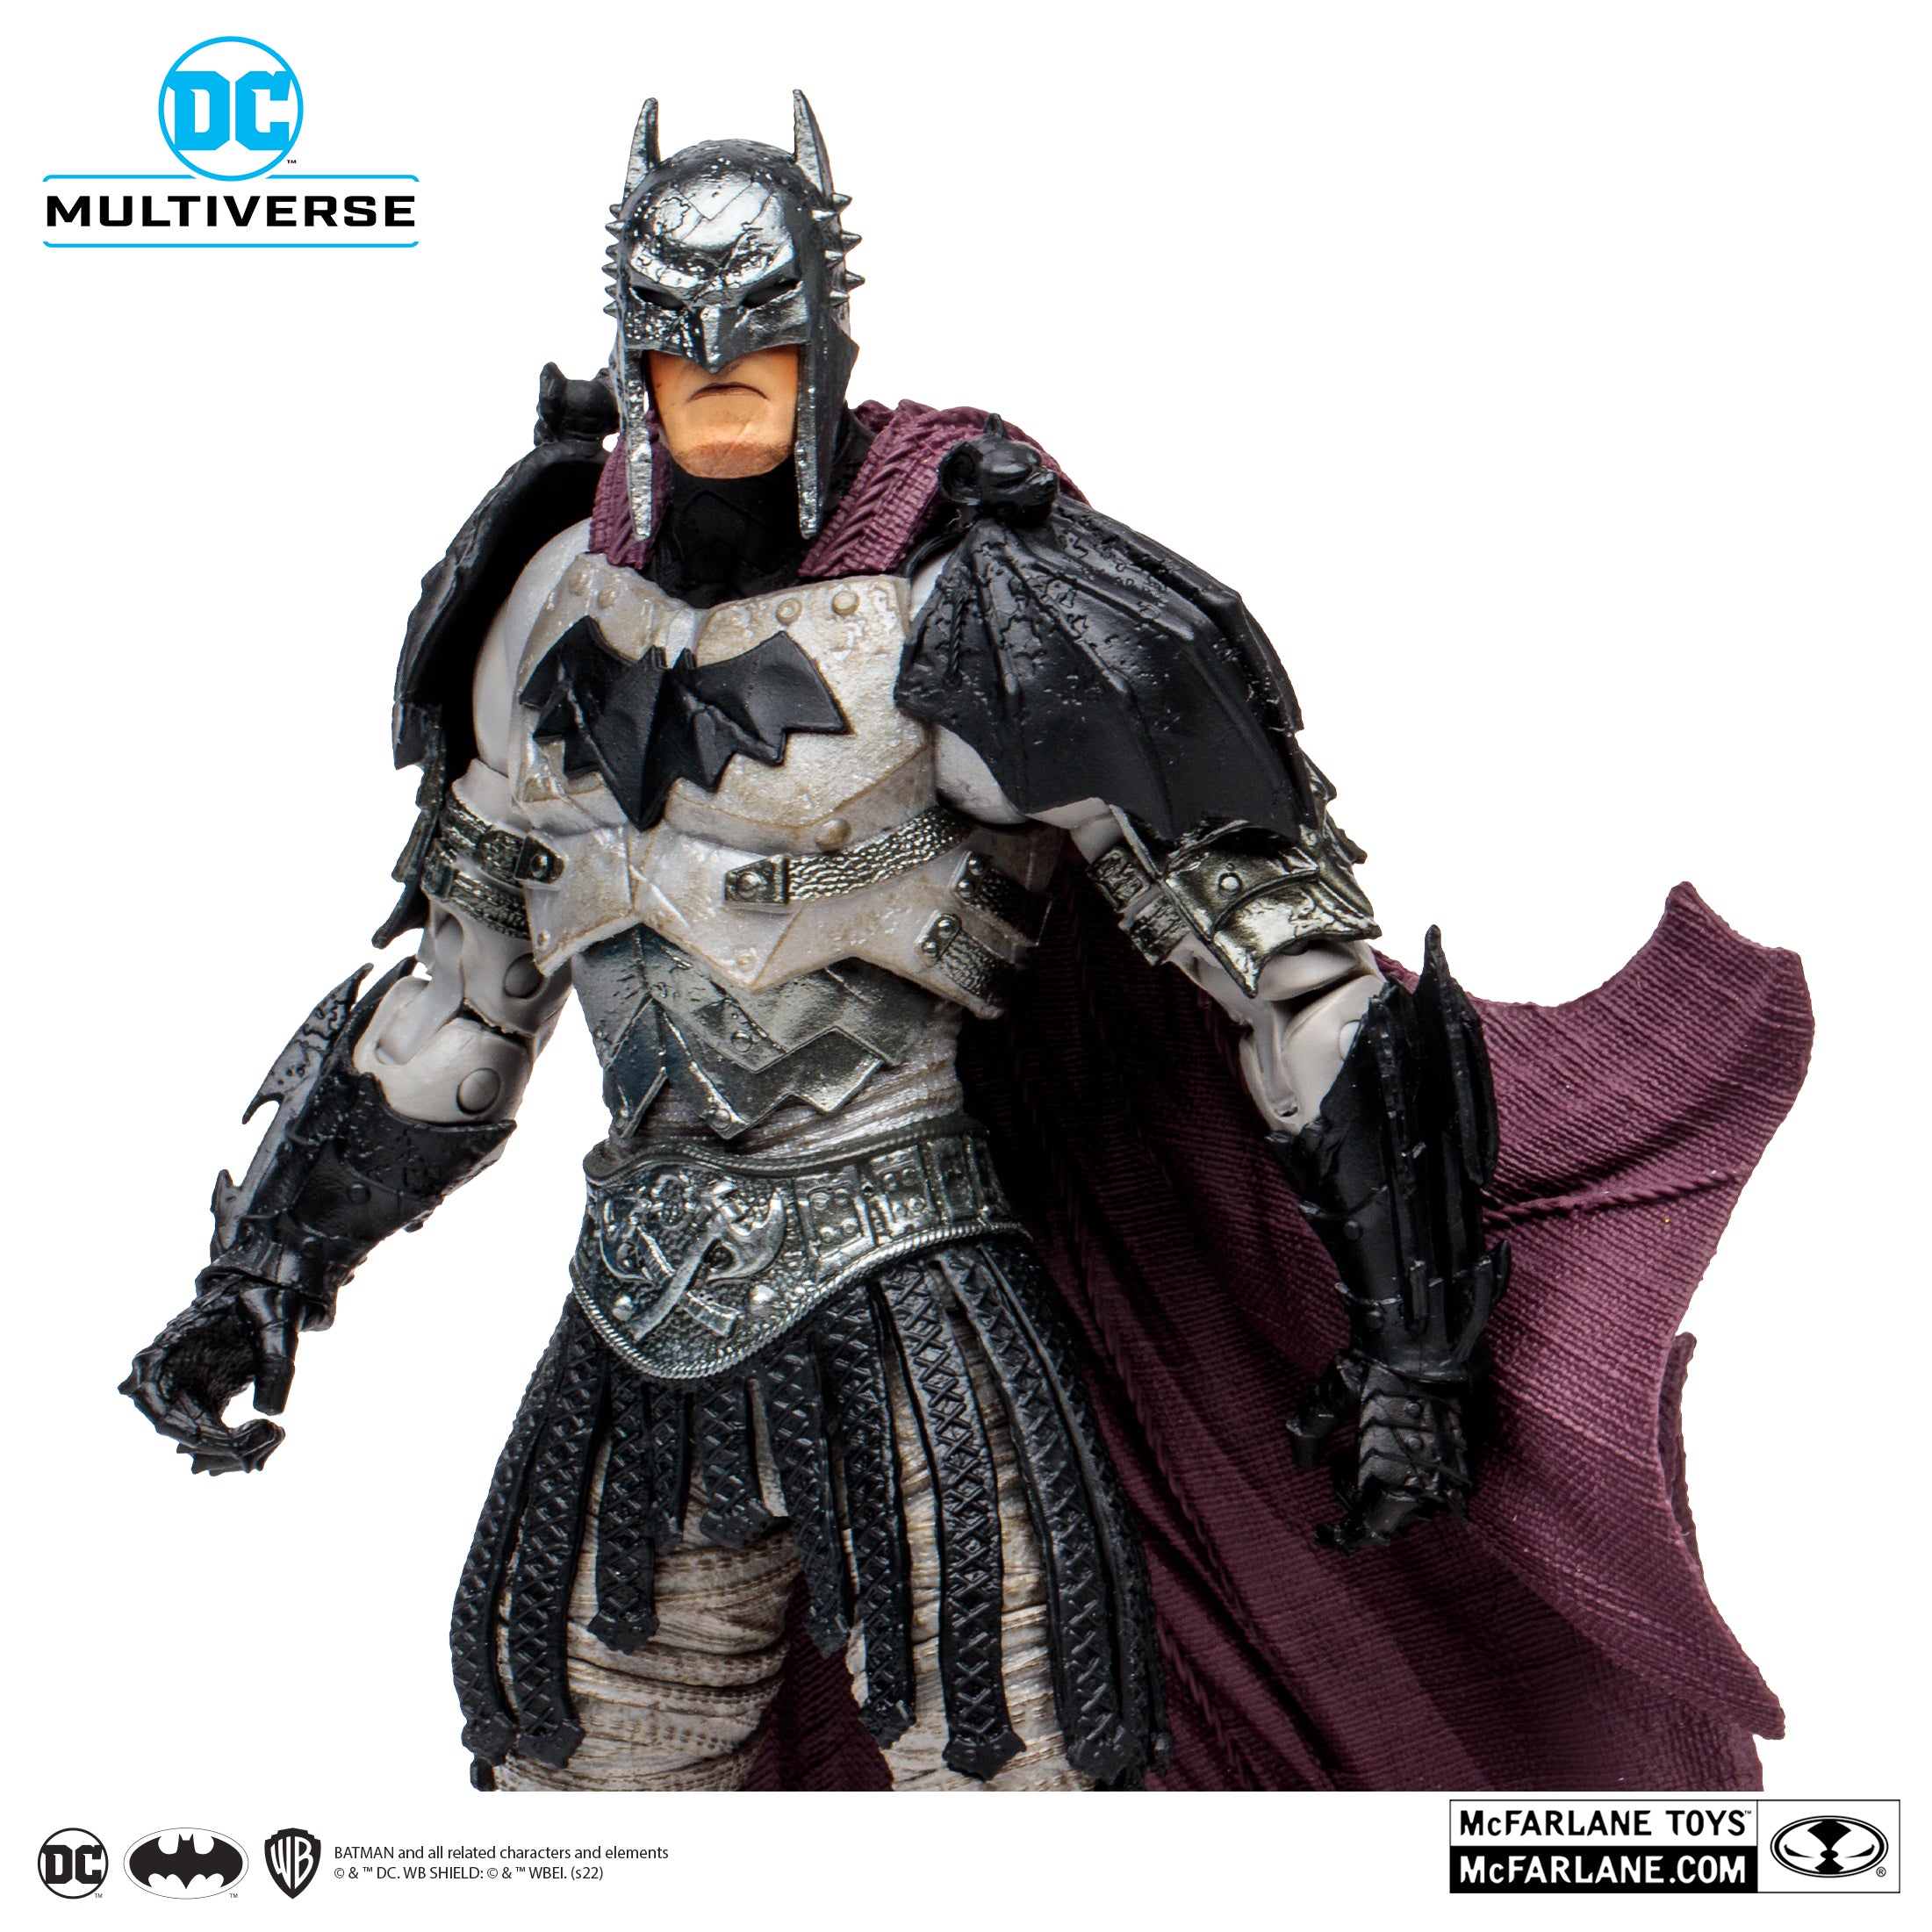 DC Multiverse - McFarlane Toys - Dark Nights: Metal - Gladiator Batman